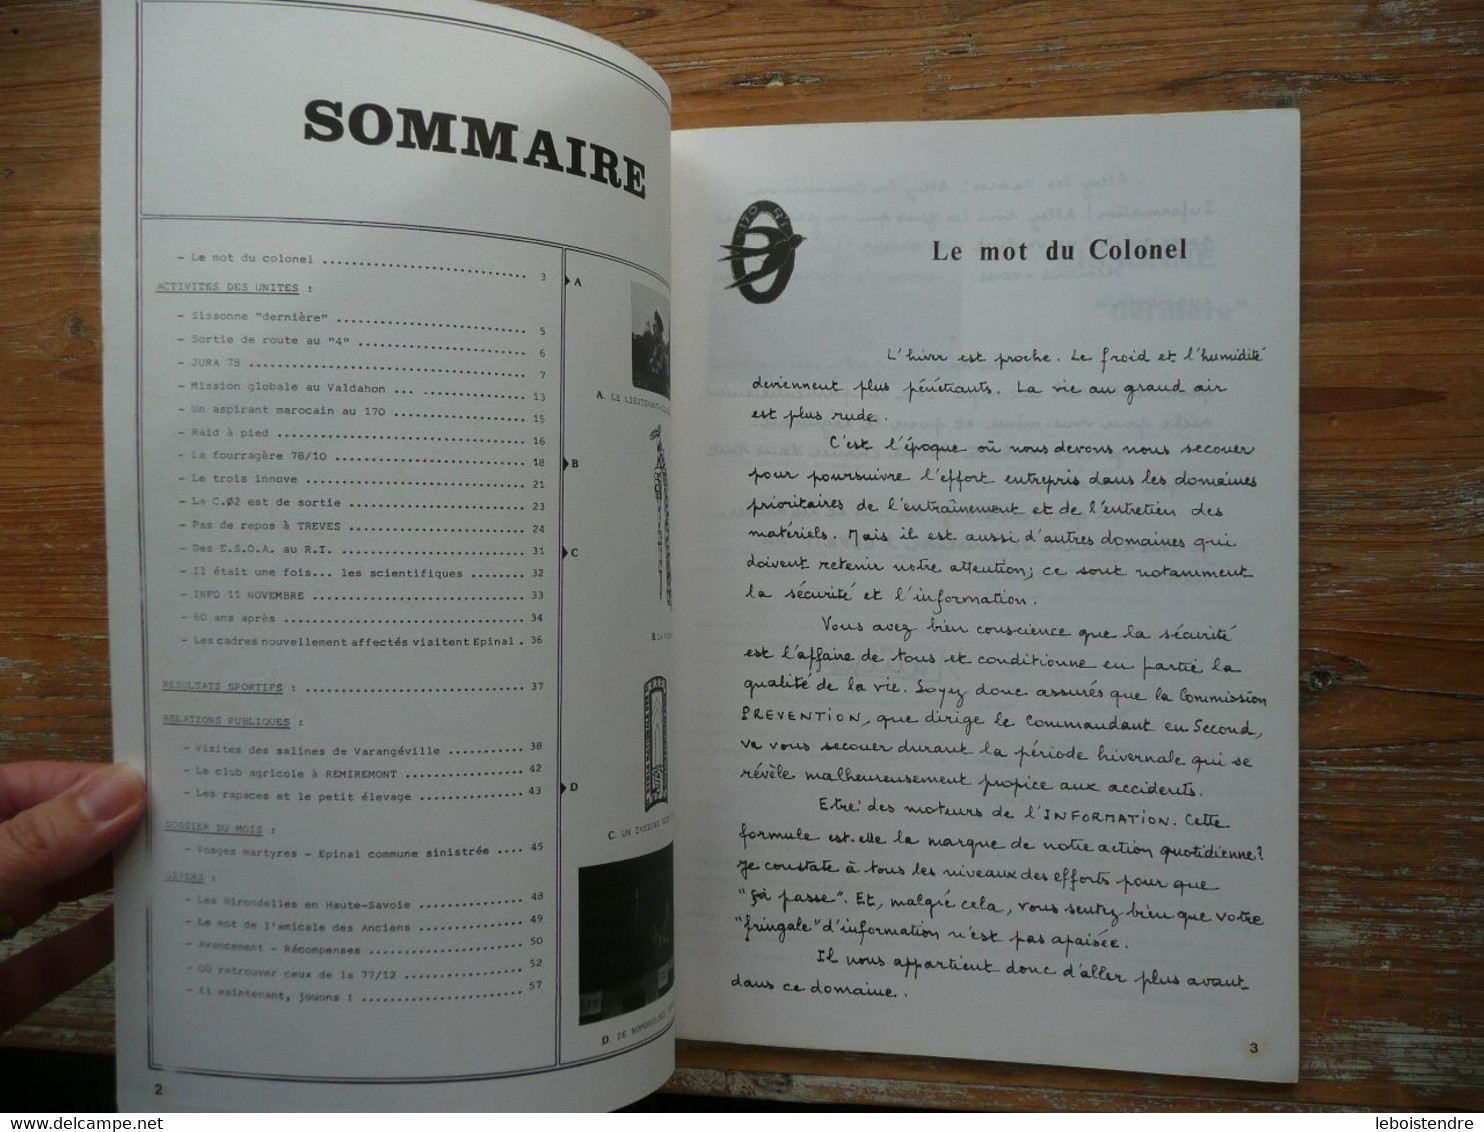 CENT SEPTANTE JOURNAL BIMESTRIEL DU 170E REGIMENT D INFANTERIE N° 20 OCTOBRE NOVEMBRE 1978 IMPRIMERIE REGIMENTAIRE - French